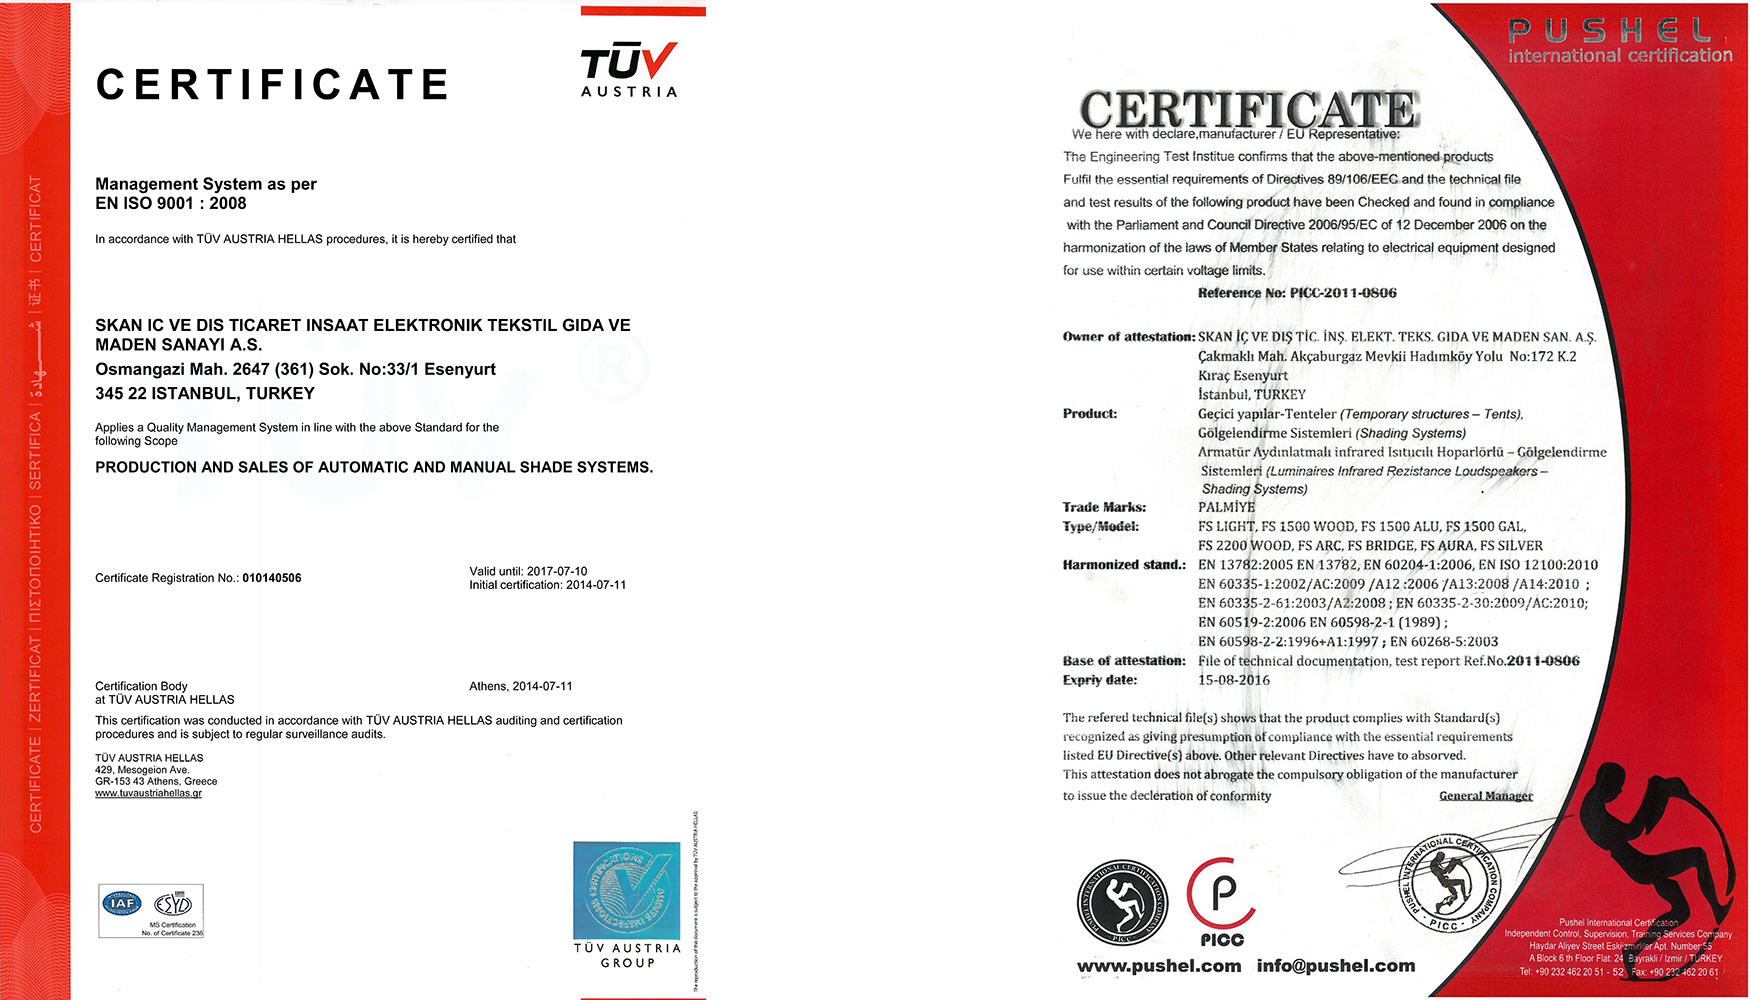 Certificados de TV AUSTRIA HELLAS y de Pushel